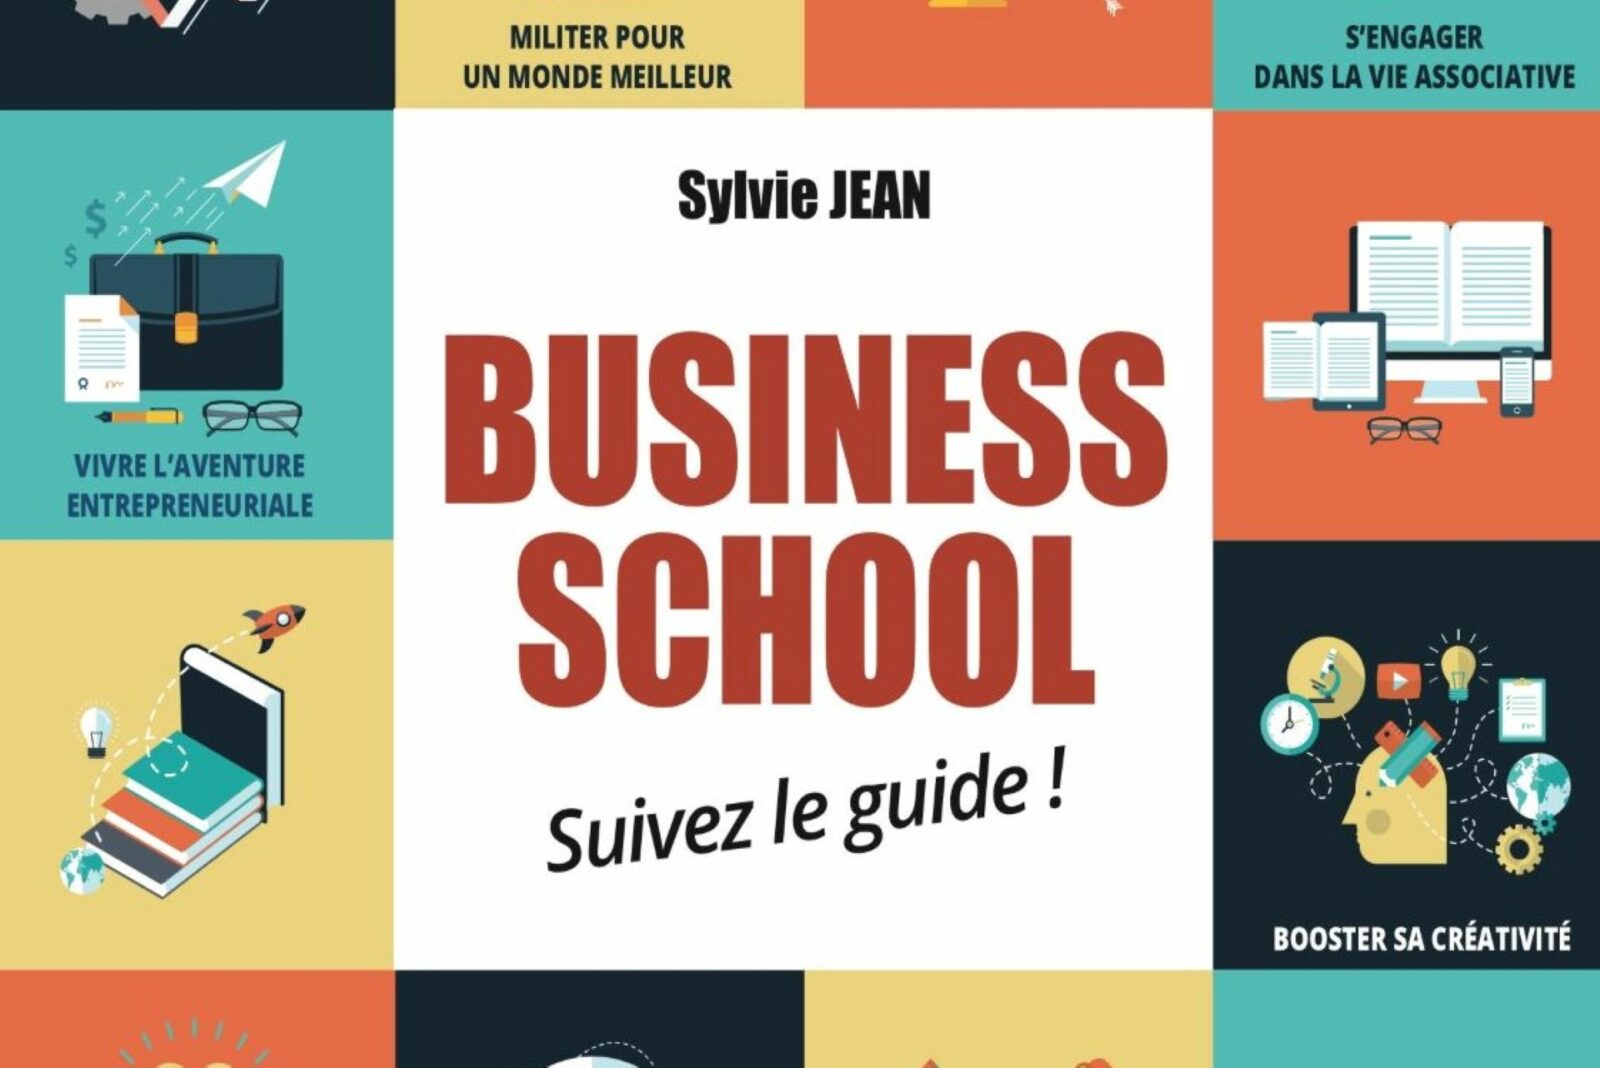 Business School : suivez le guide ! : tout savoir sur les business schools avec Sylvie Jean